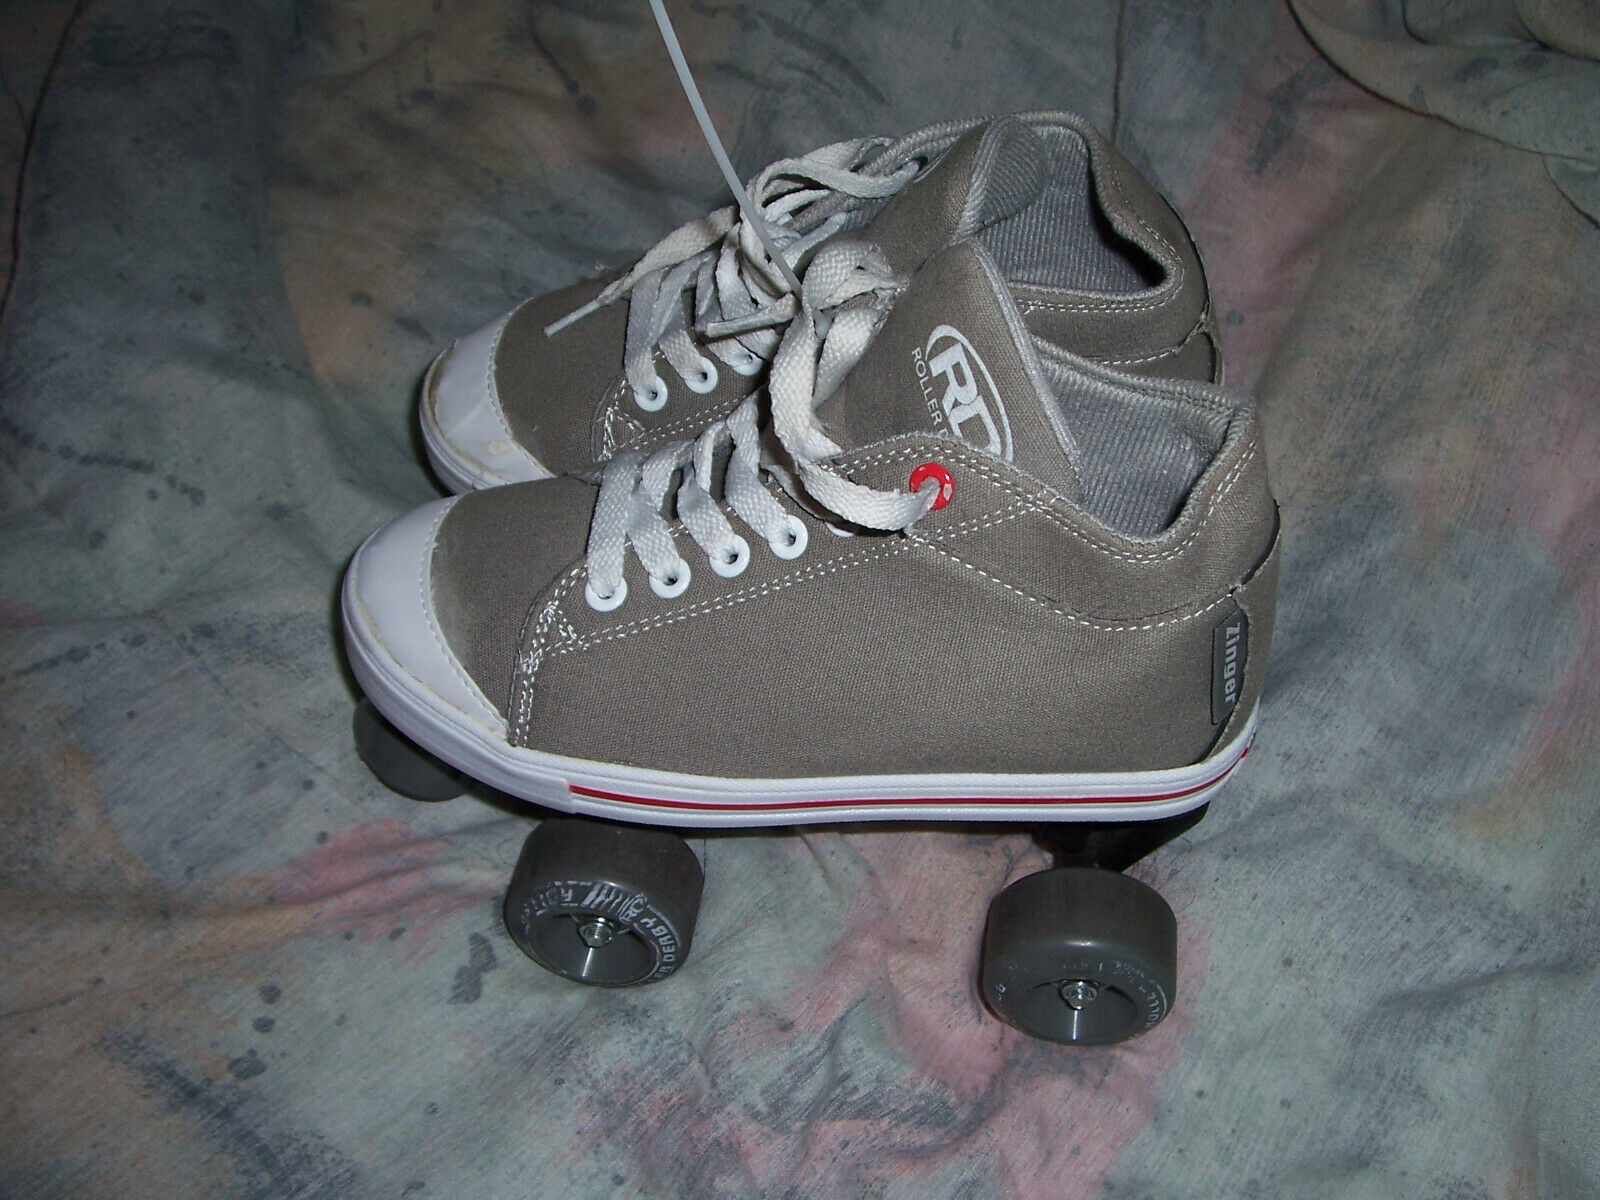 RD Zinger Uni-Sex Quad Roller Derby Skates Grey - Canvas Sneaker Skate Size 5